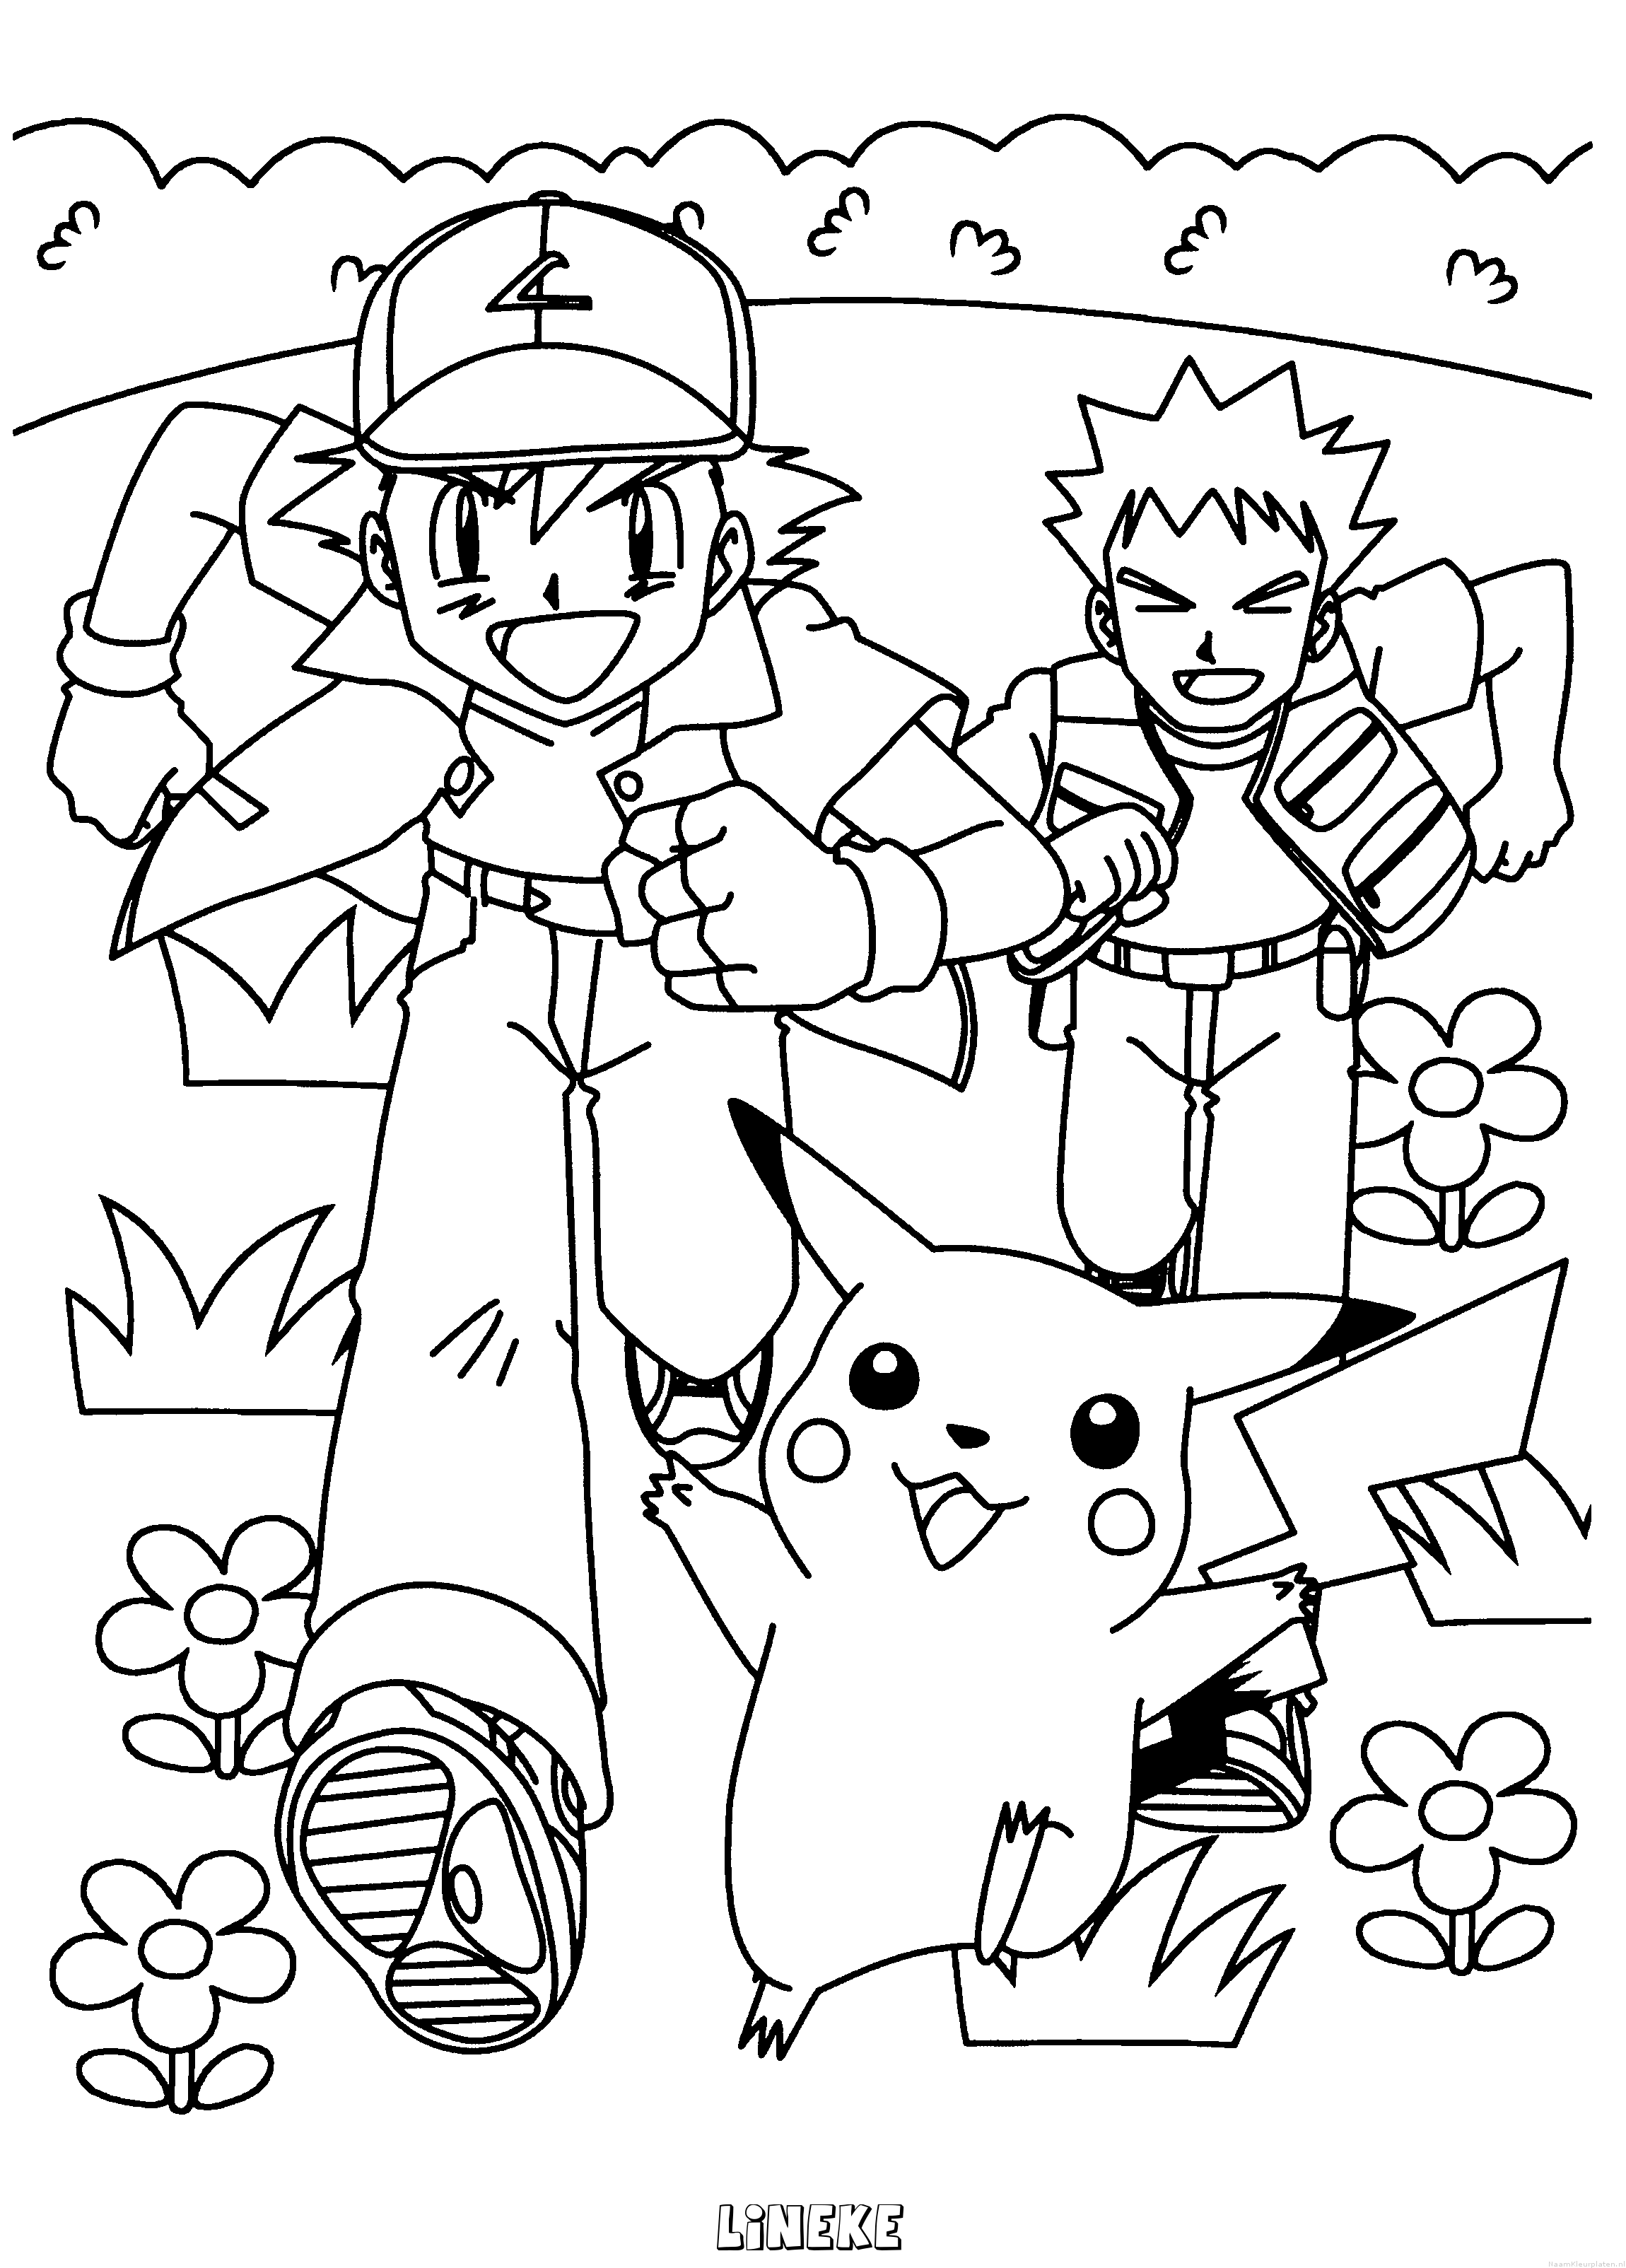 Lineke pokemon